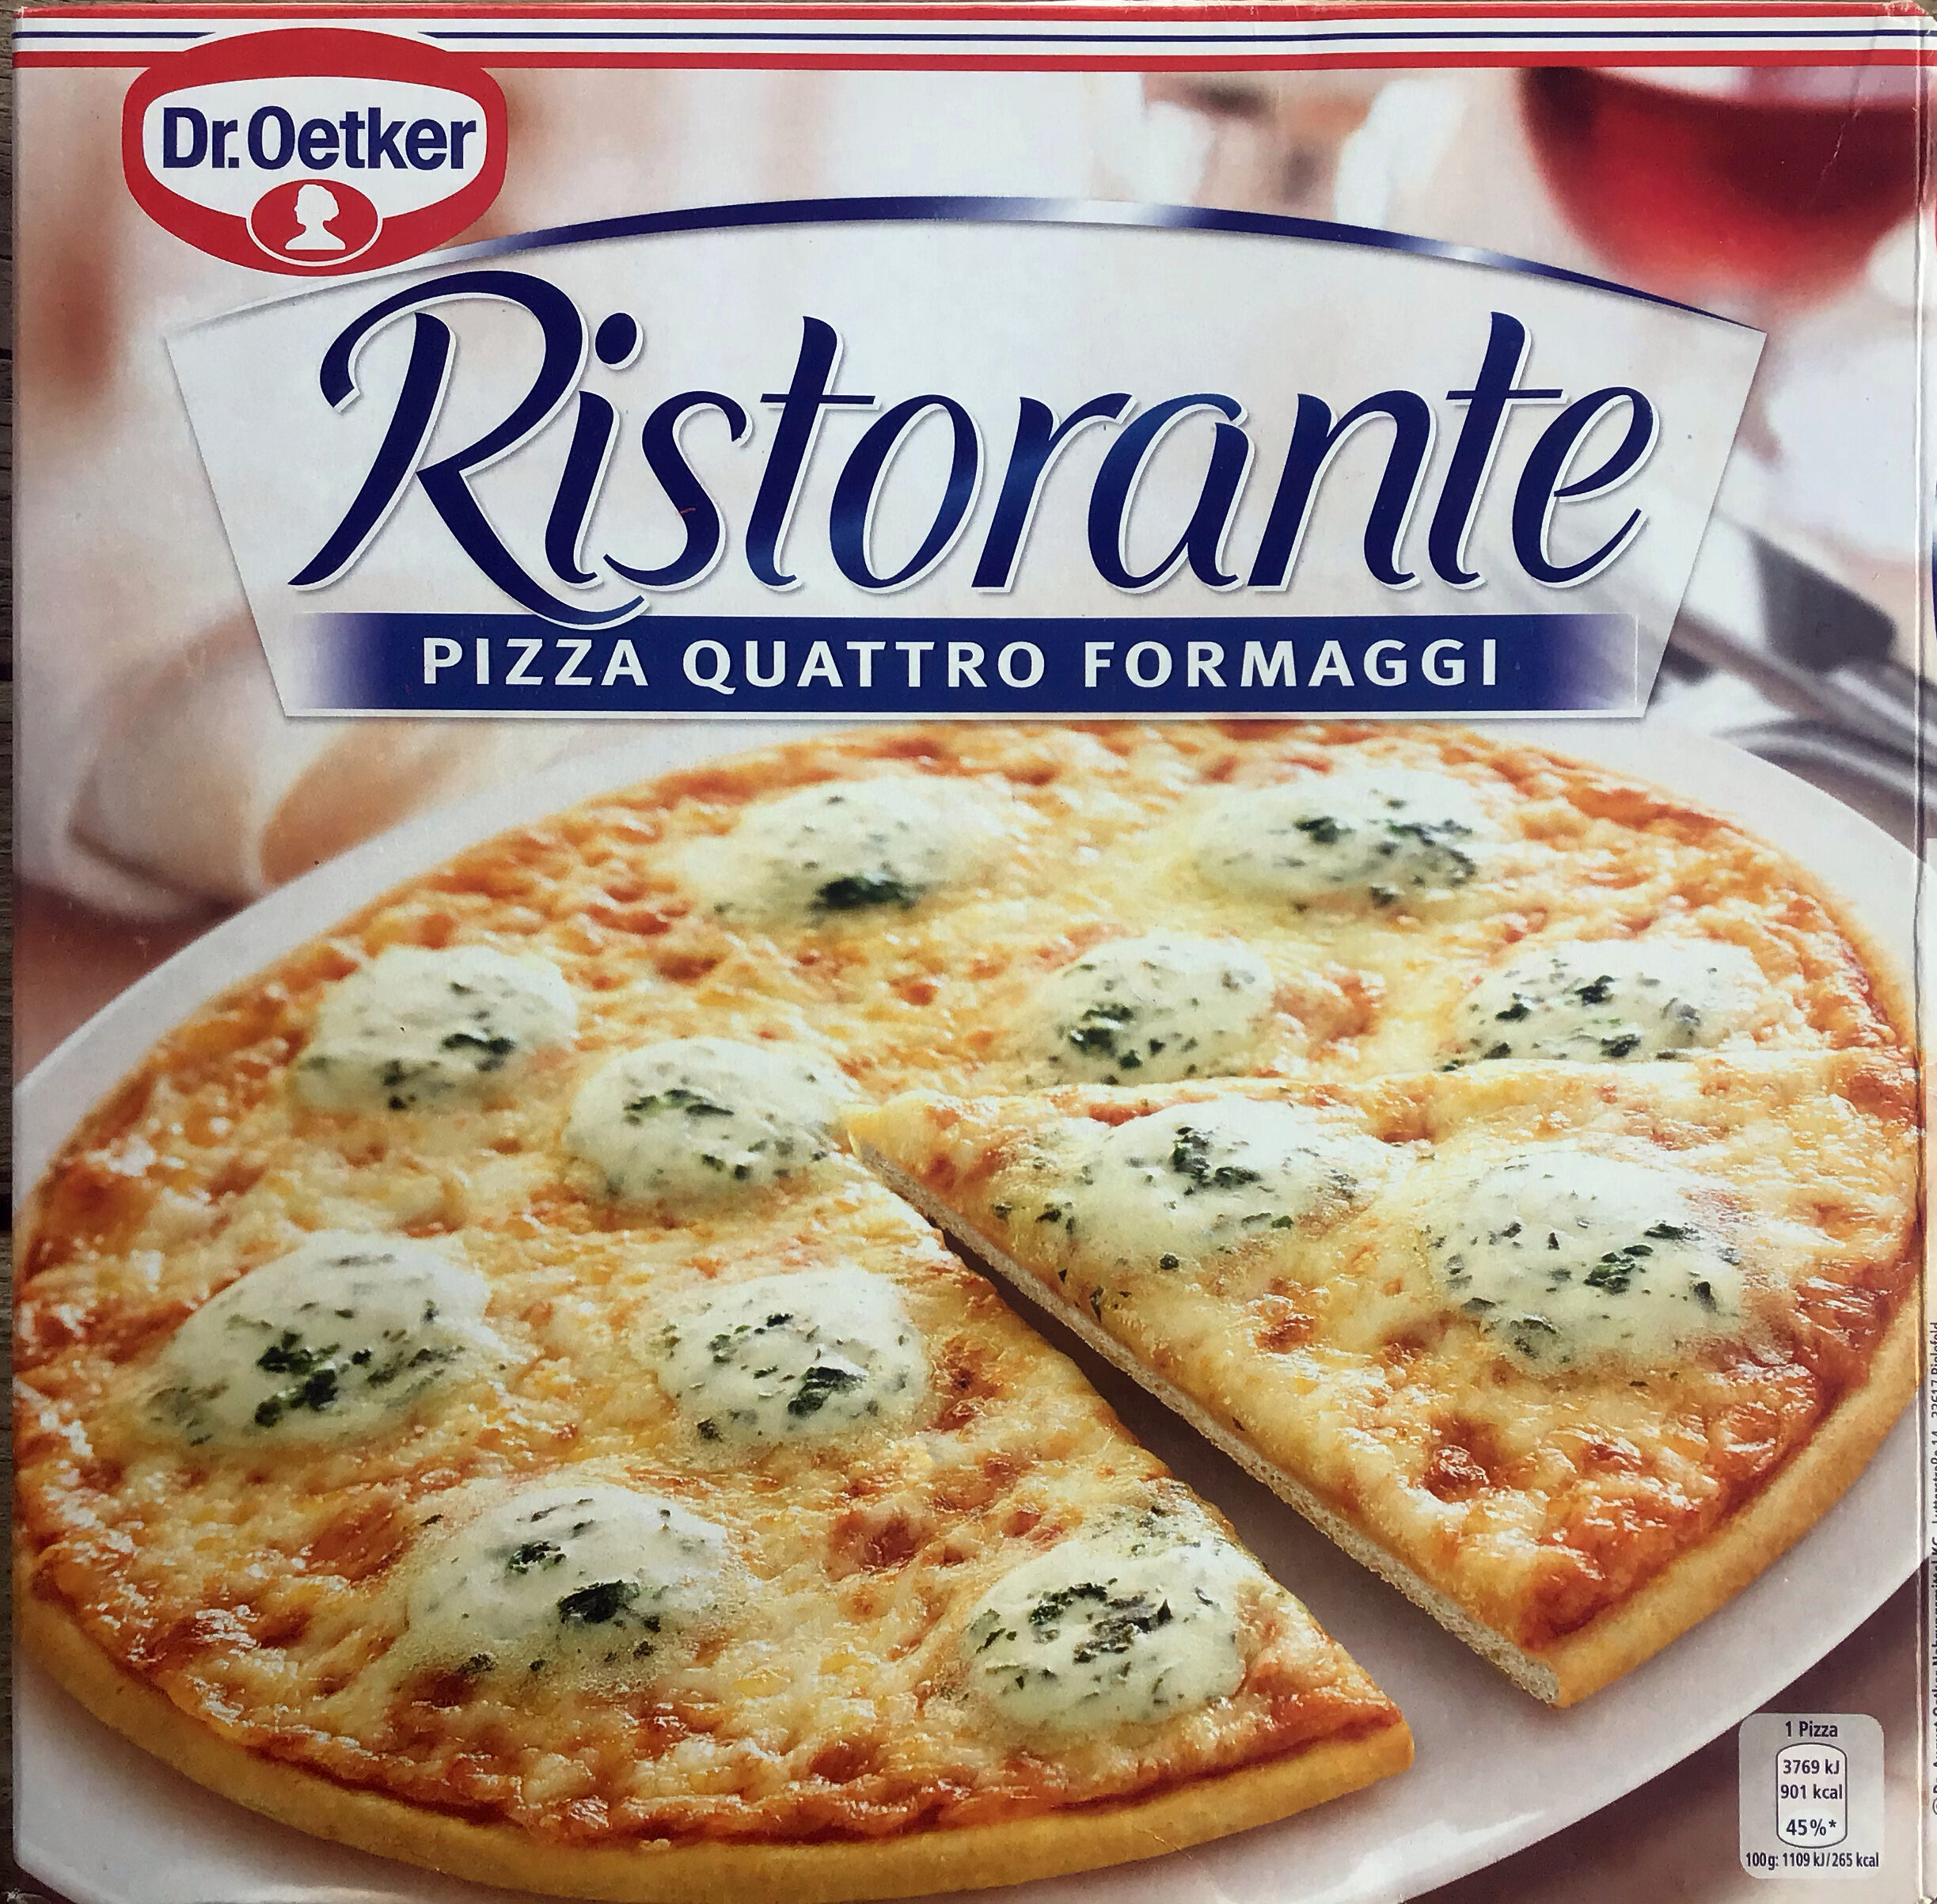 Ristorante Pizza quattro formaggi - Product - en